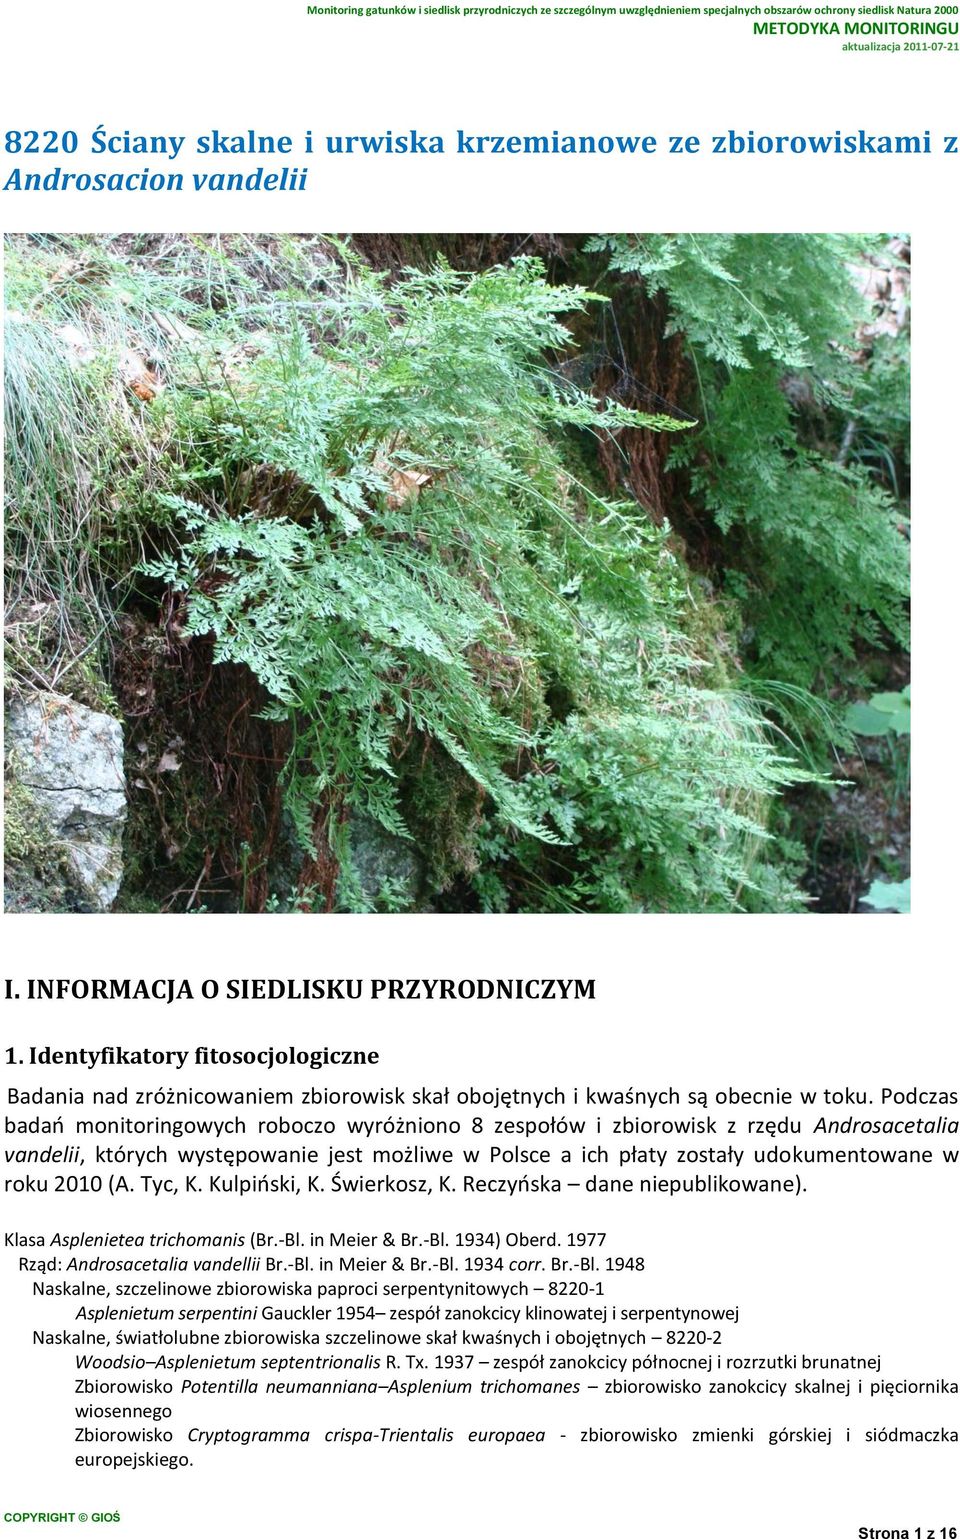 Podczas badań monitoringowych roboczo wyróżniono 8 zespołów i zbiorowisk z rzędu Androsacetalia vandelii, których występowanie jest możliwe w Polsce a ich płaty zostały udokumentowane w roku 2010 (A.